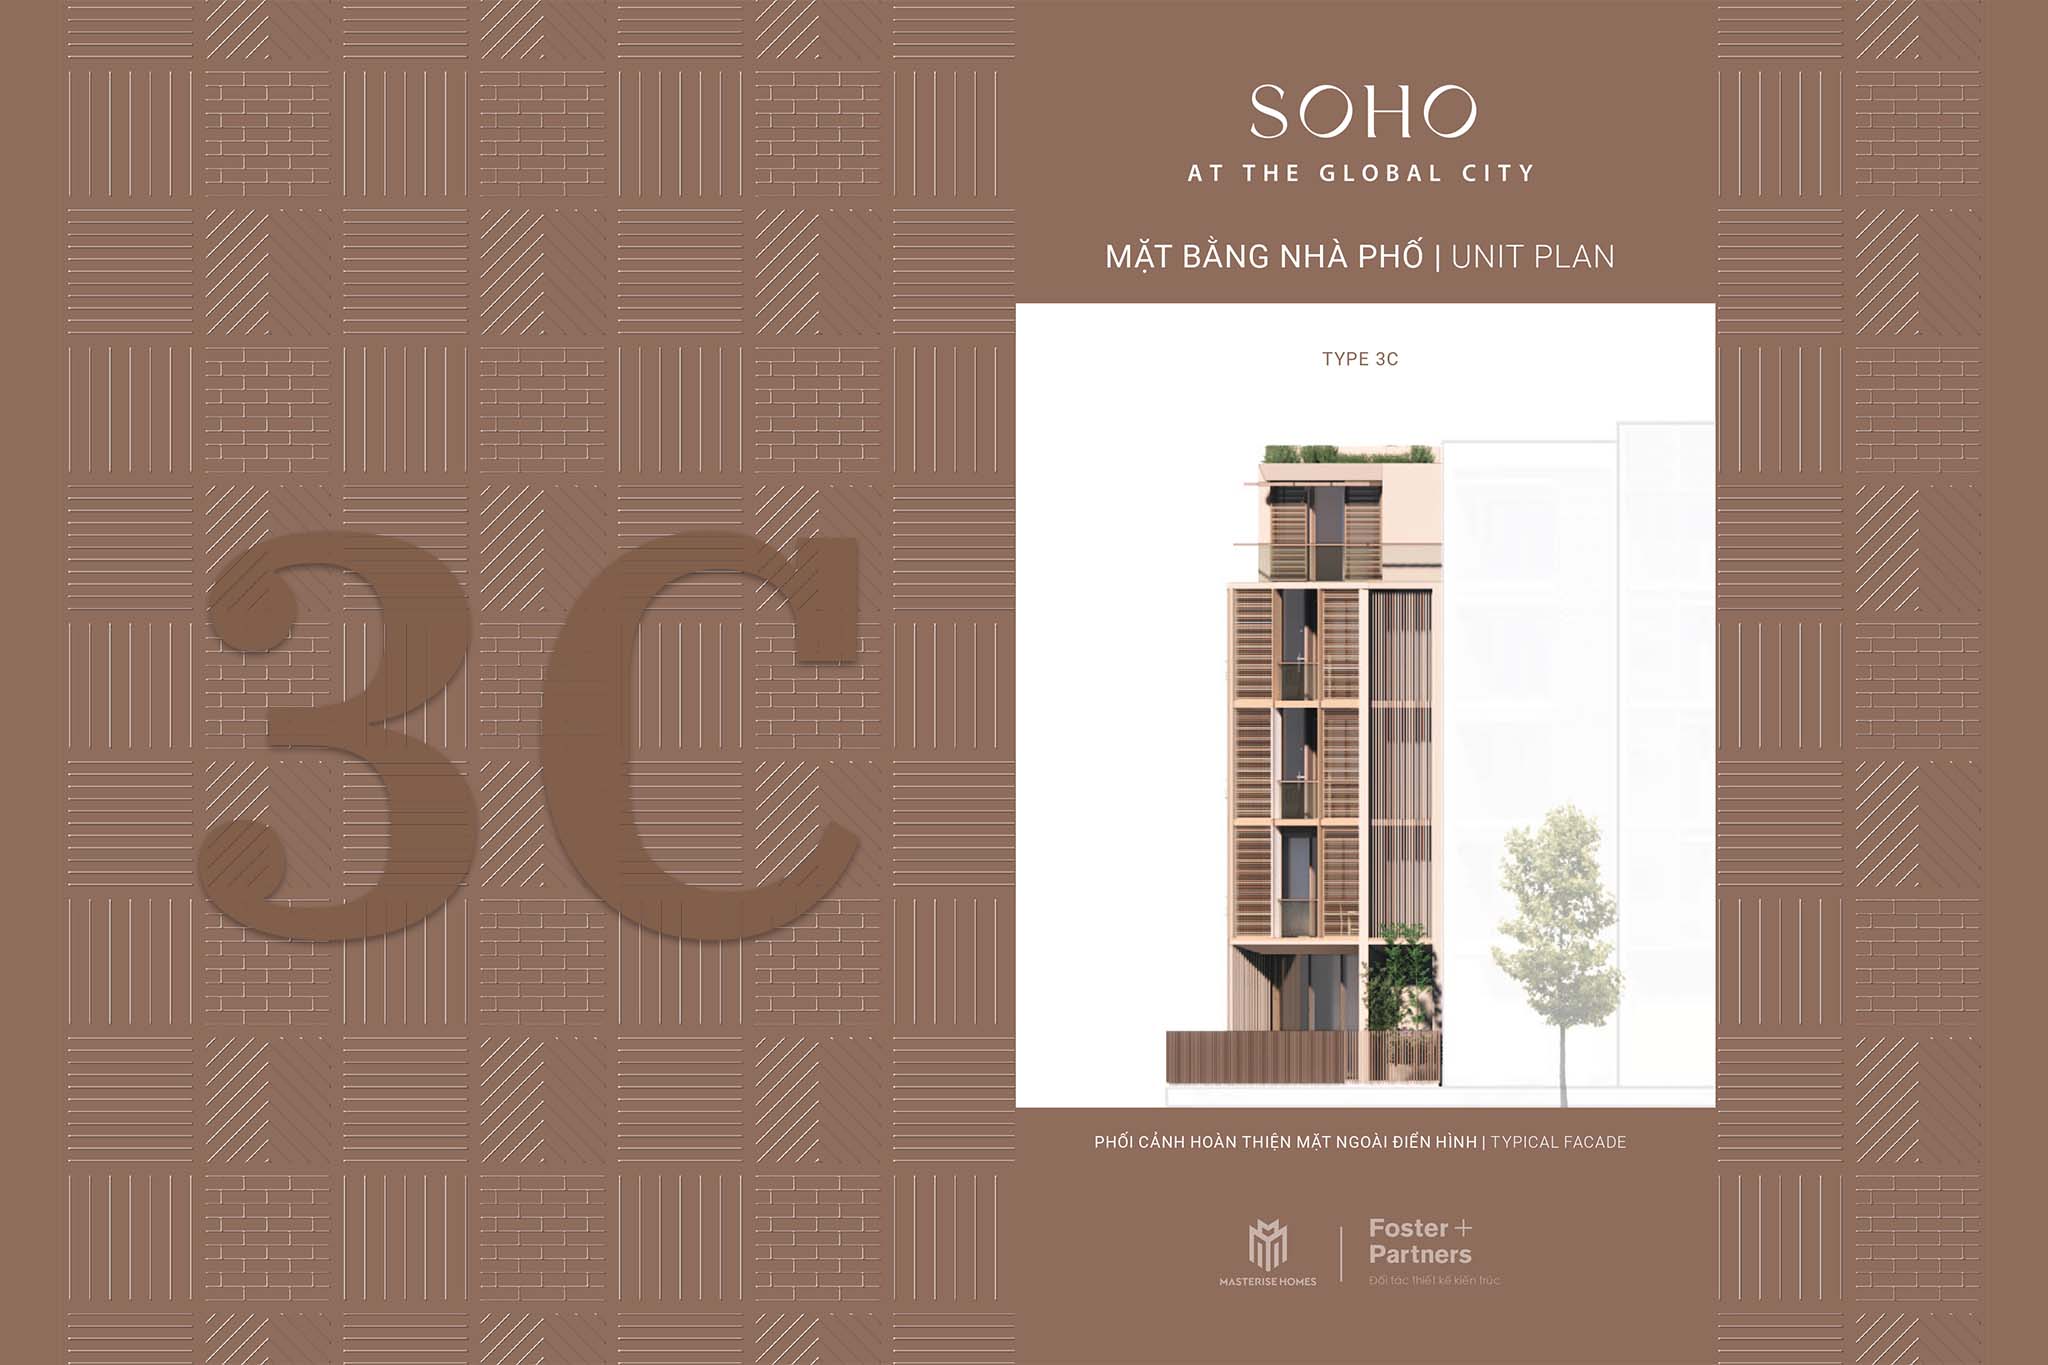 Nhà phố The Global City | Mặt bằng thiết kế nhà phố SOHO - Mẫu nhà 3C